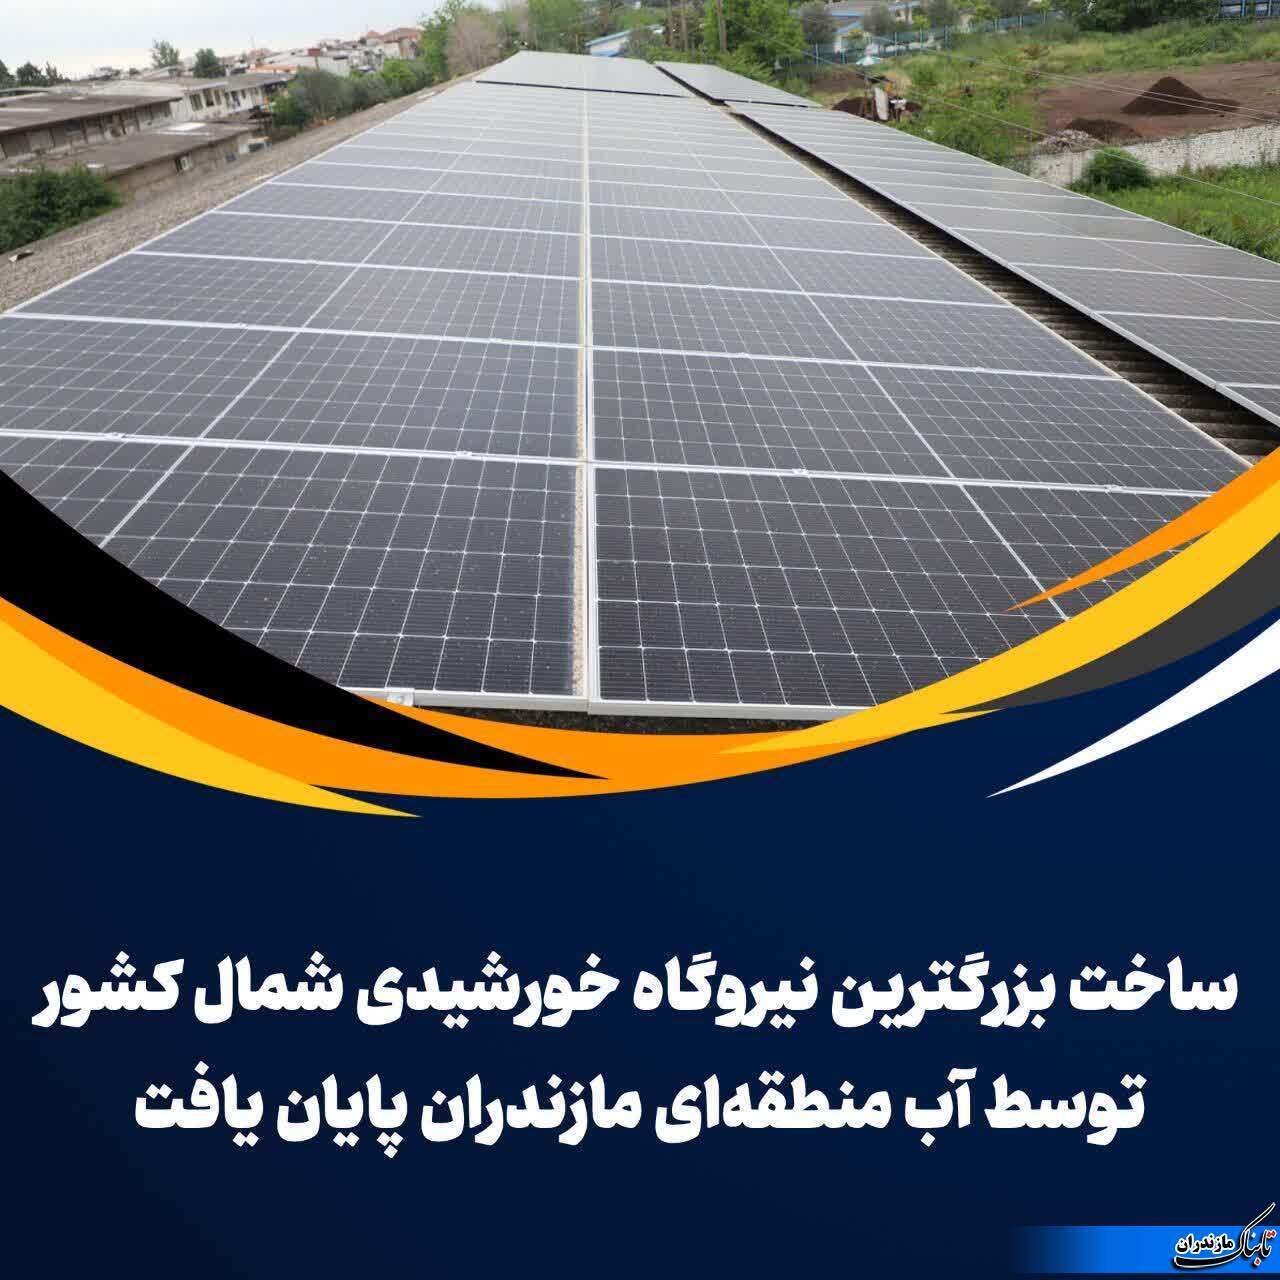 ساخت بزرگترین نیروگاه خورشیدی شمال توسط شرکت آب منطقه ای مازندران